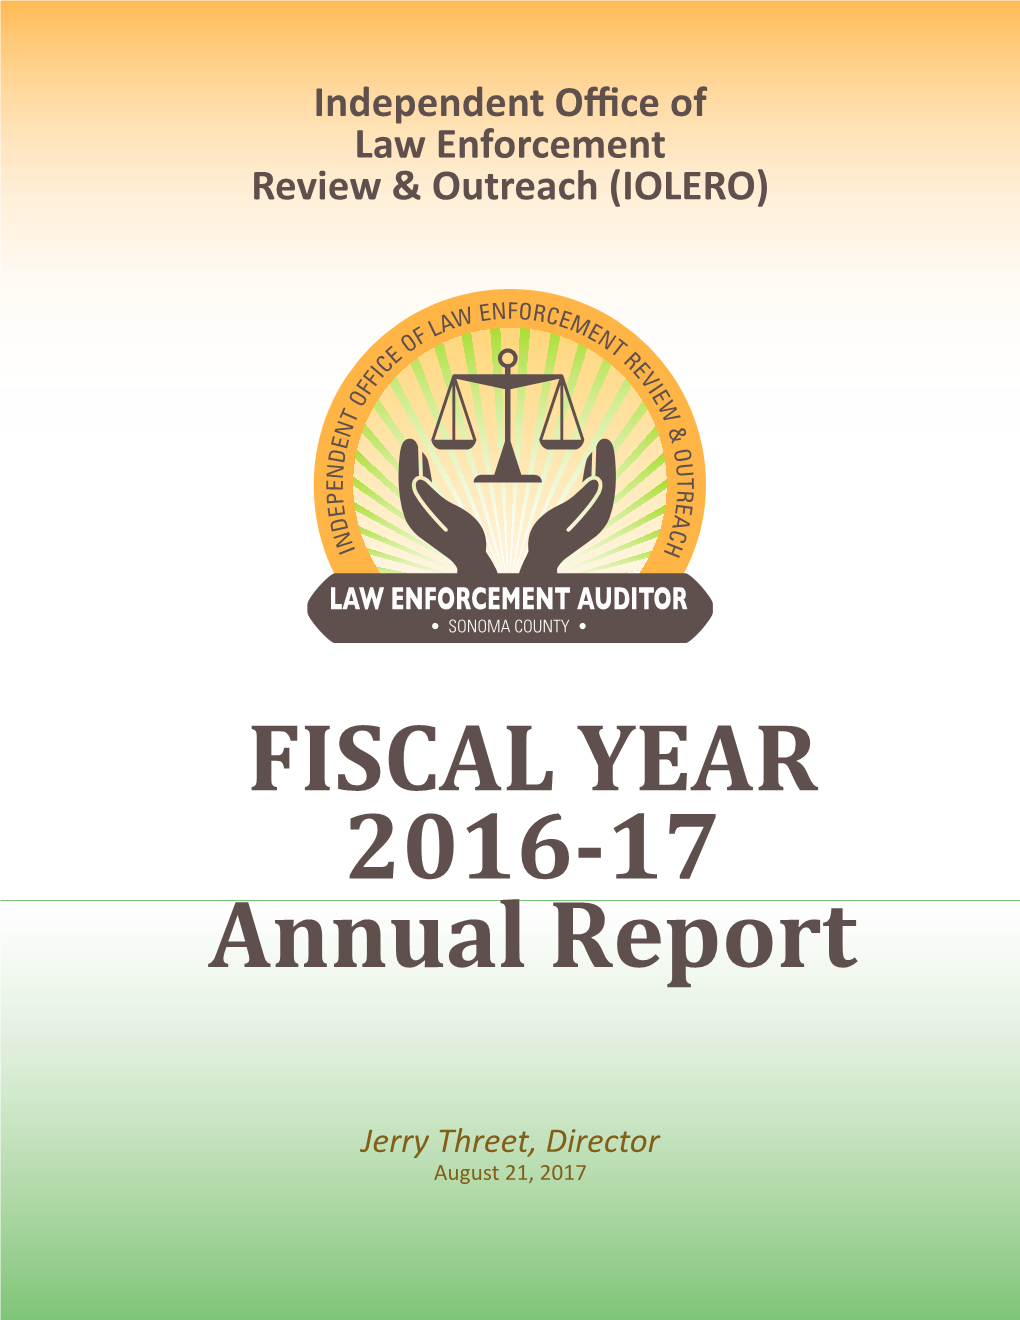 Download the 2016-2017 IOLERO Annual Report